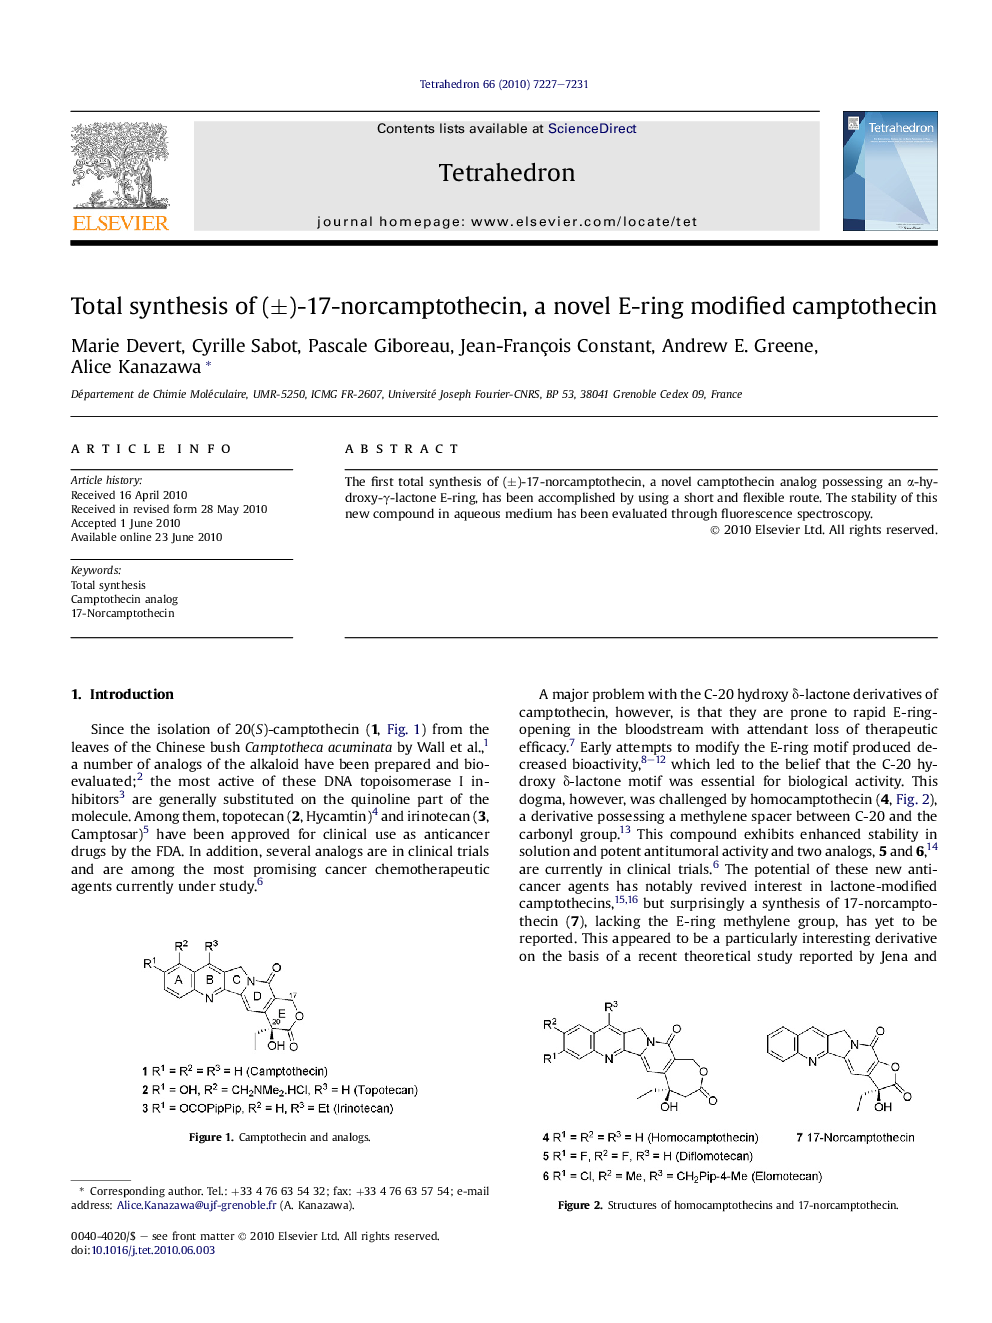 Total synthesis of (±)-17-norcamptothecin, a novel E-ring modified camptothecin